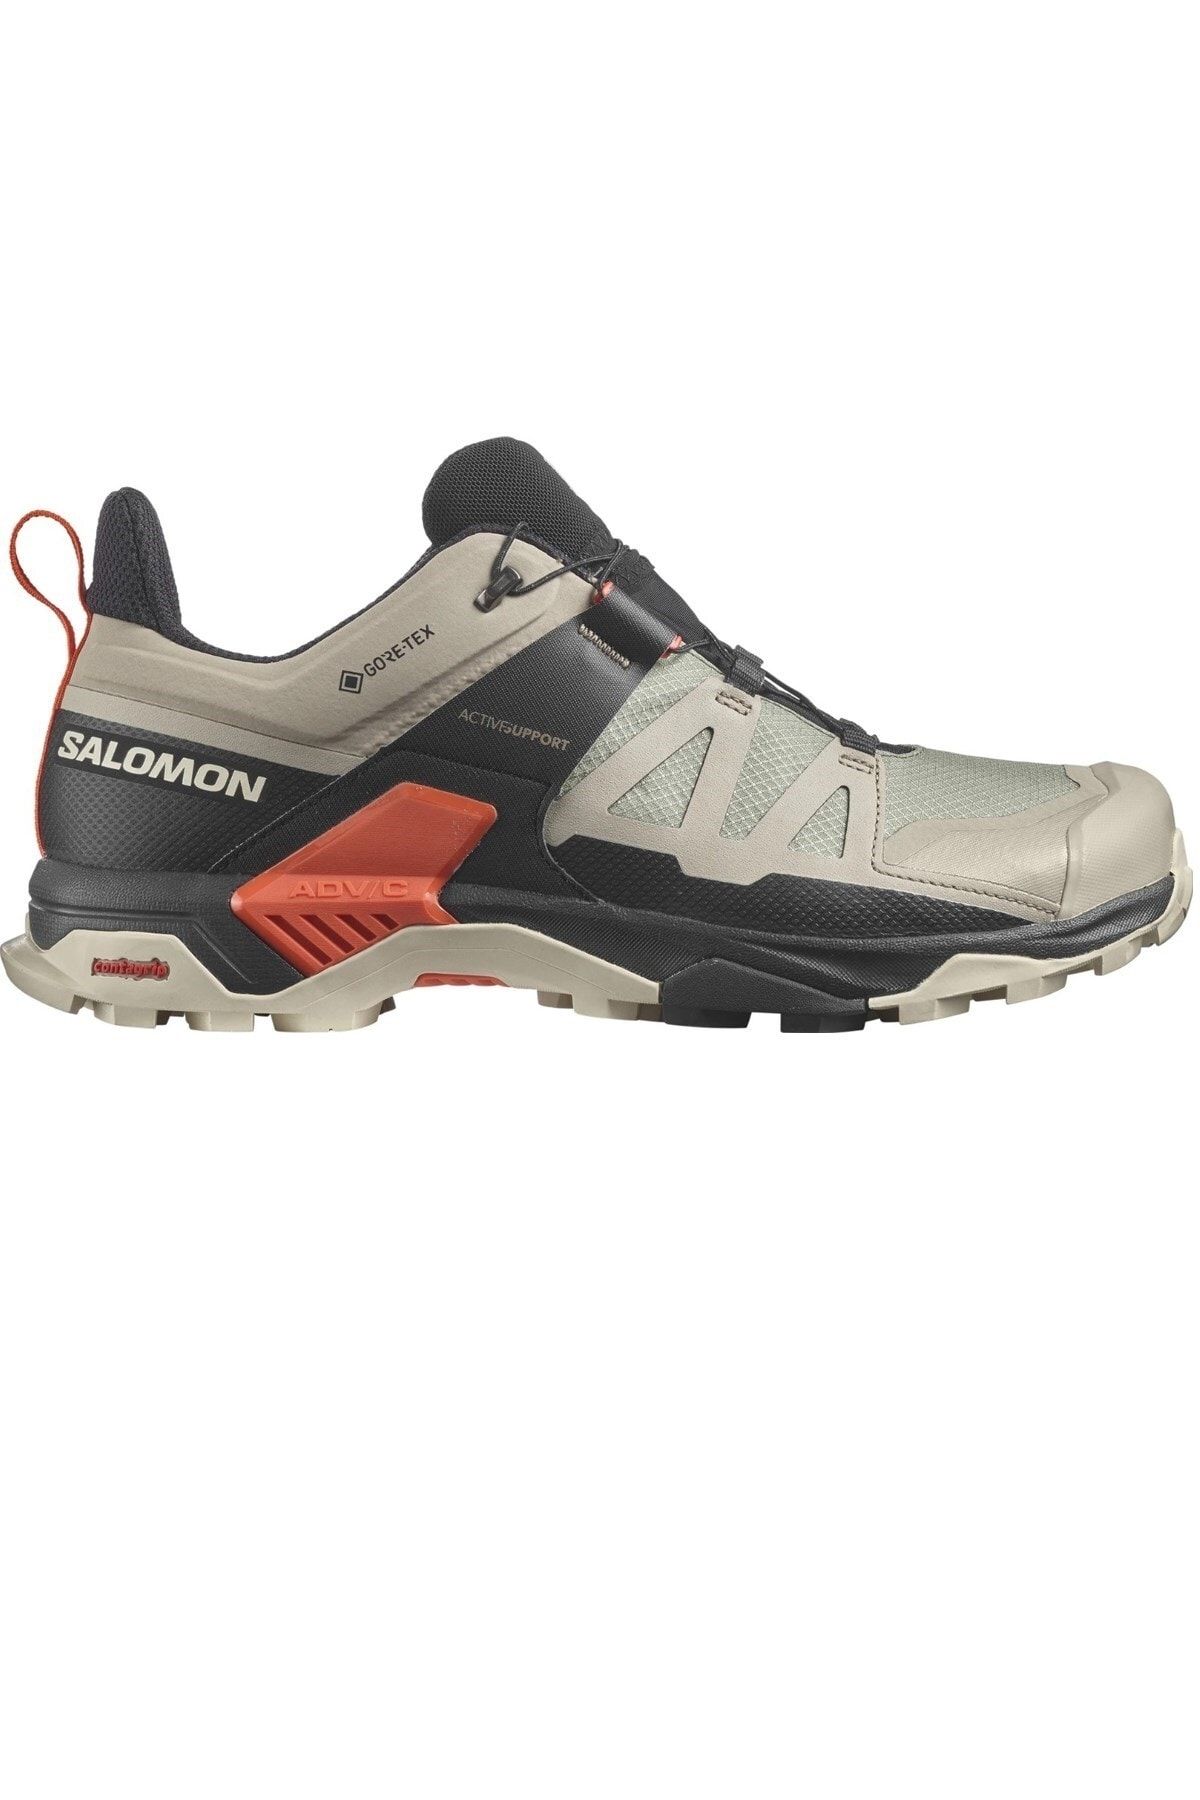 Salomon X Ultra 4 Gtx Erkek Outdoor Ayakkabı L41731400